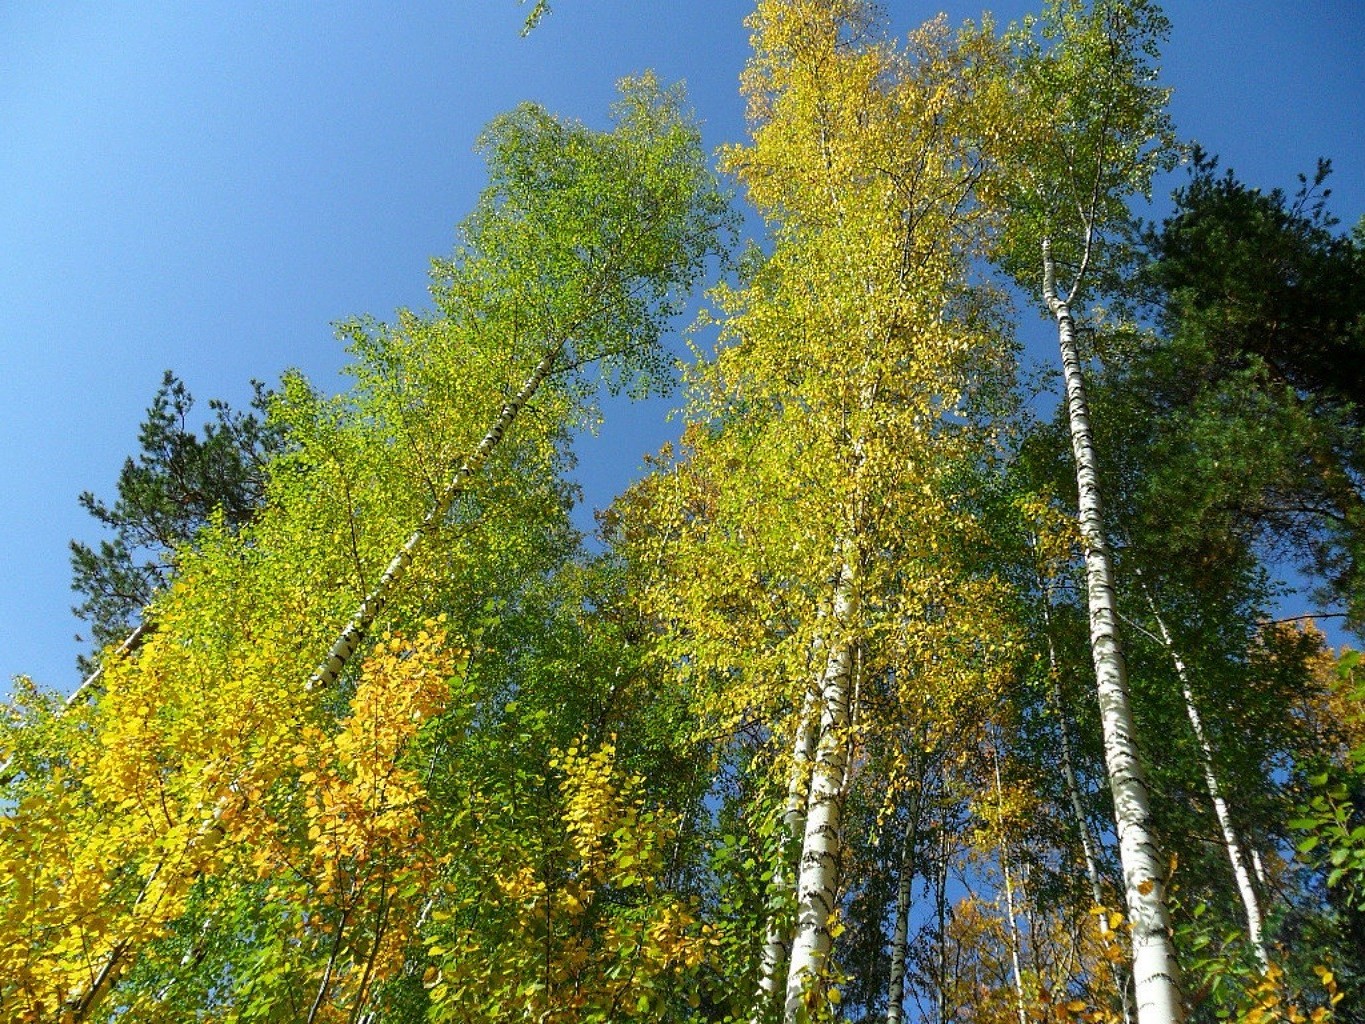 деревья древесины дерево природа лист осень пейзаж хорошую погоду на открытом воздухе парк сезон живописный дикий среды филиал лето яркий флора сцена береза